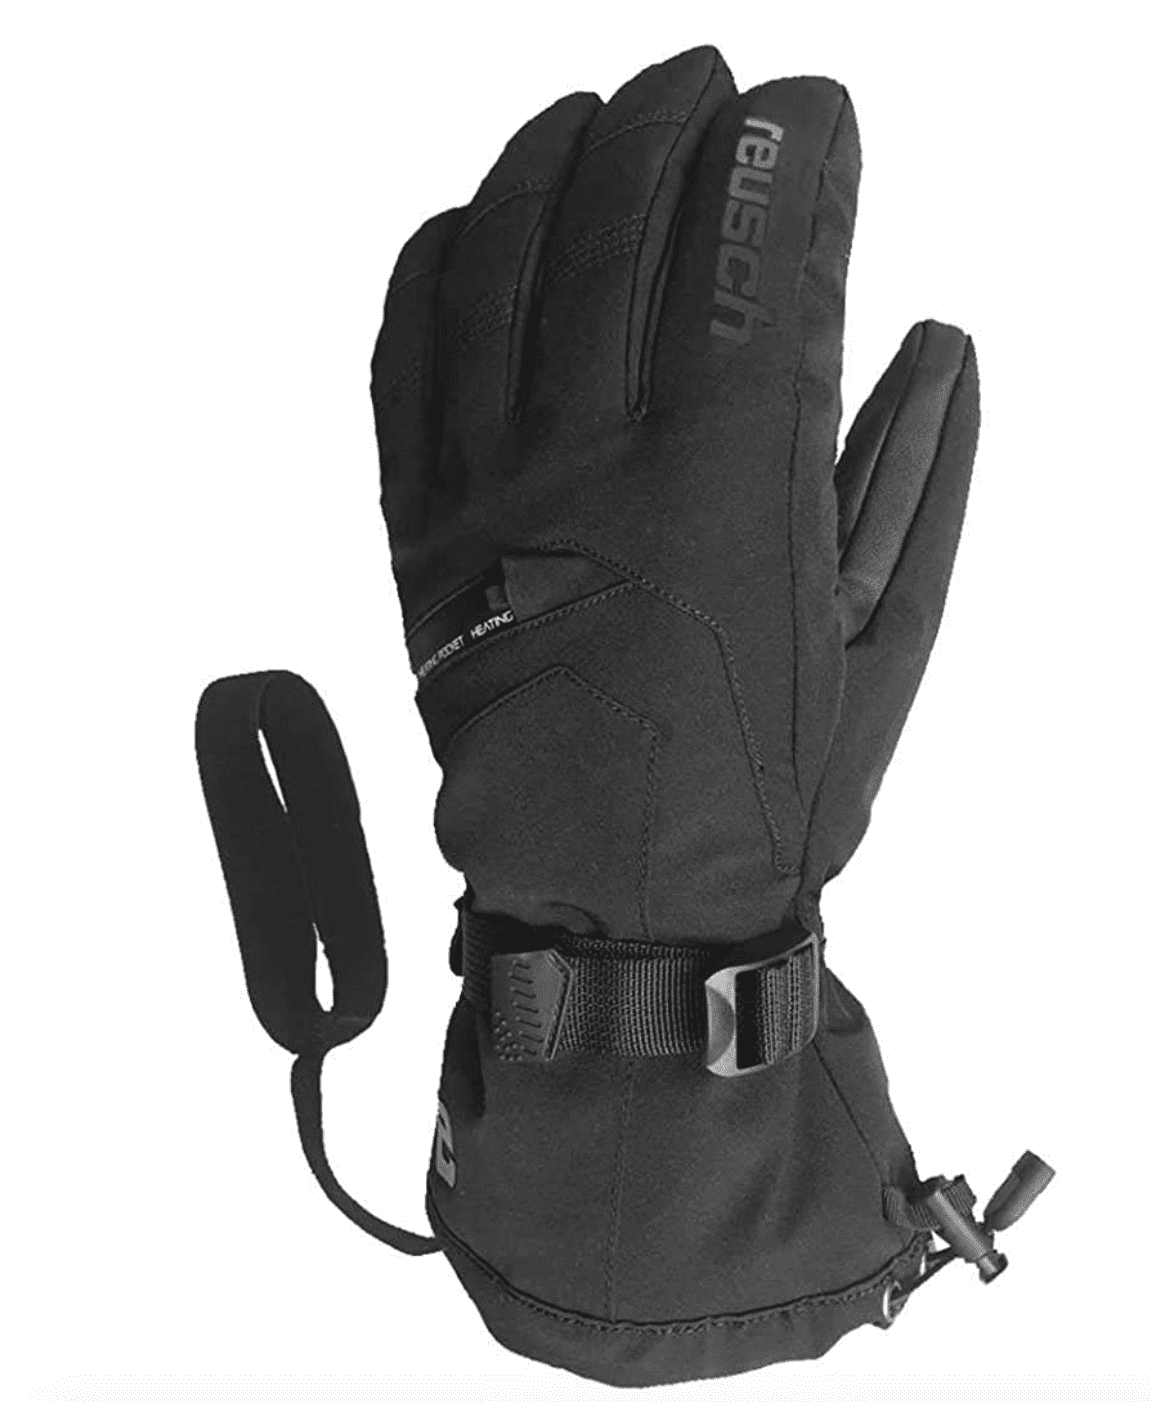 *NEW* Reusch Primaloft Unisex Adult Snow Ski Winter Gloves